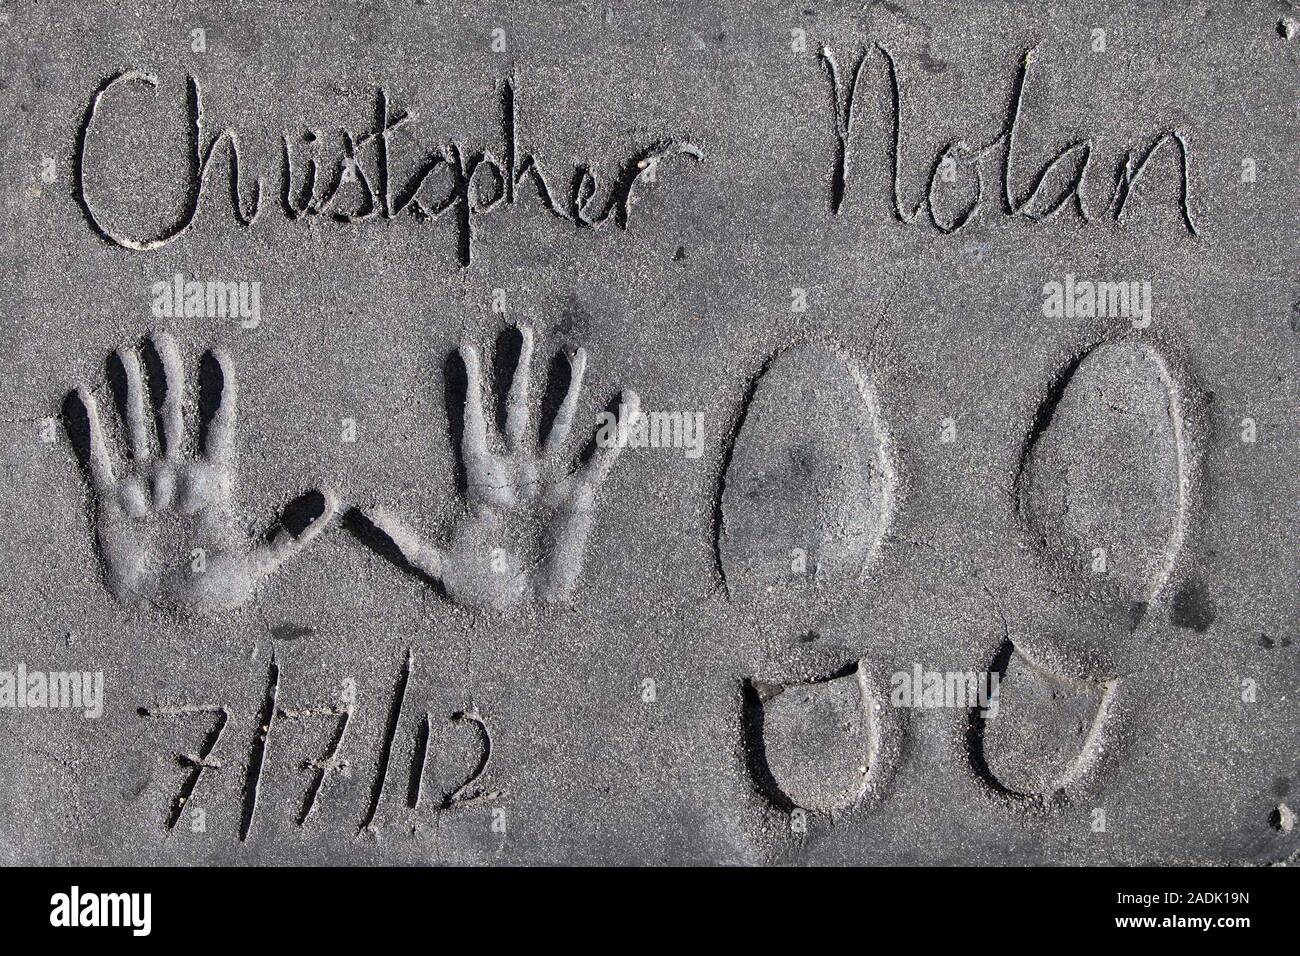 Los Angeles, Kalifornien - September 06, 2019: Hand- und Fußabdrücke von Filmemacher Christopher Nolan in der Grauman Chinese Theater Vorplatz, Hollywood. Stockfoto